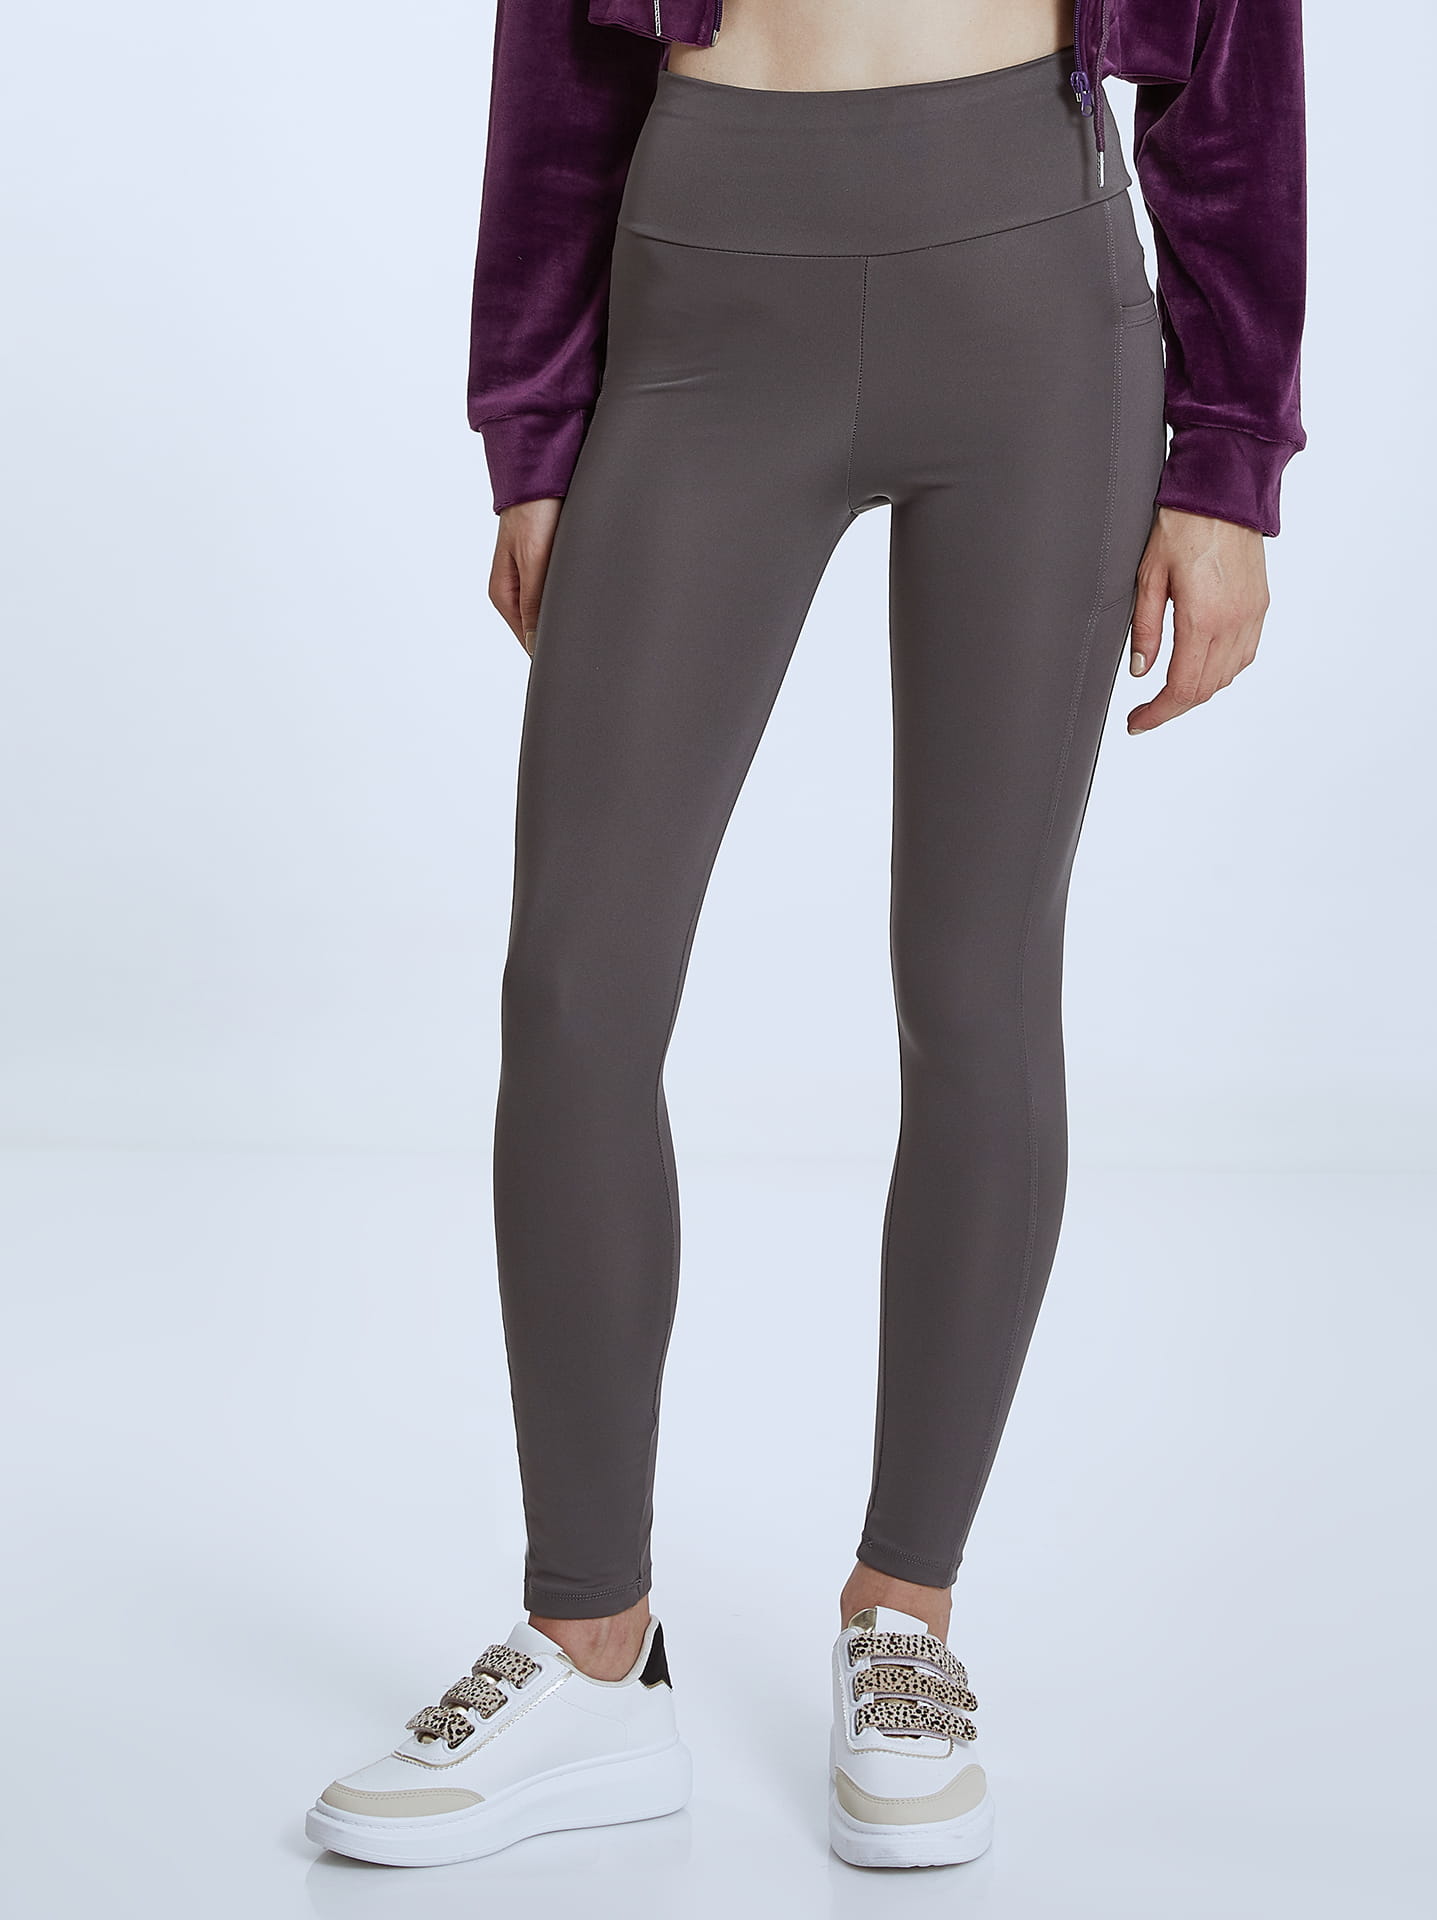 Elastic leggings with pocket in grey, 11.99€